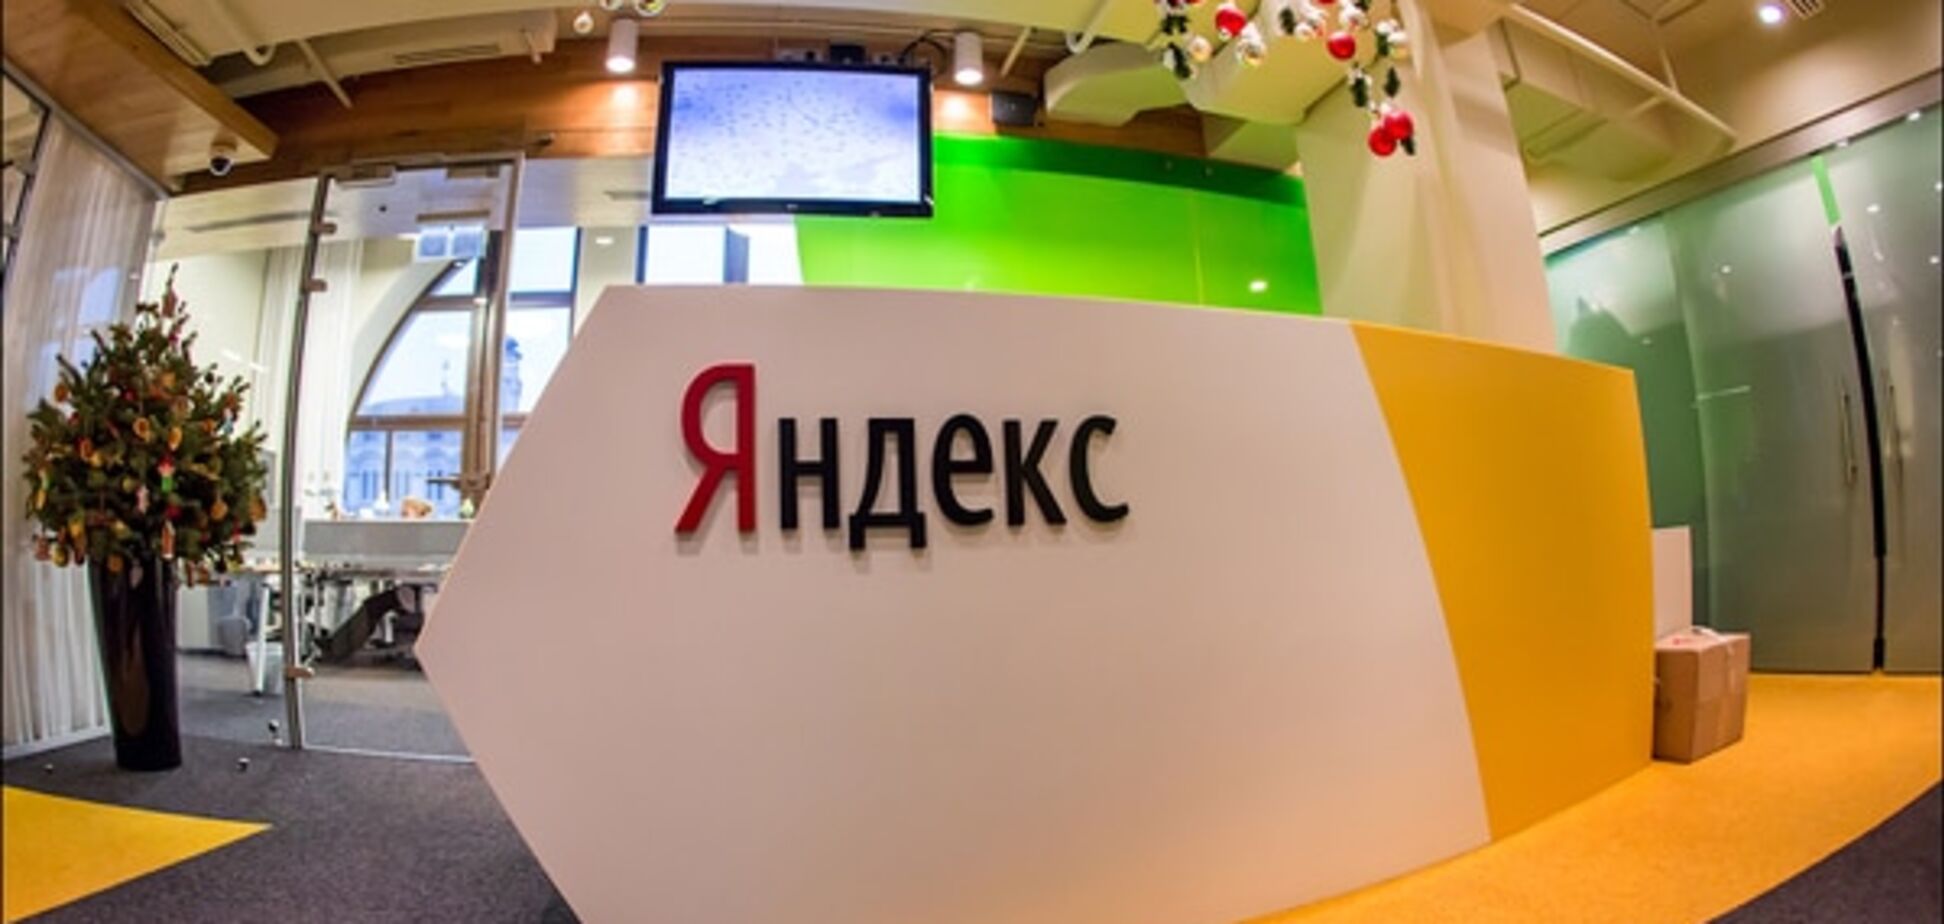 Яндекс запропонував премію тим, хто зламає їх браузер 